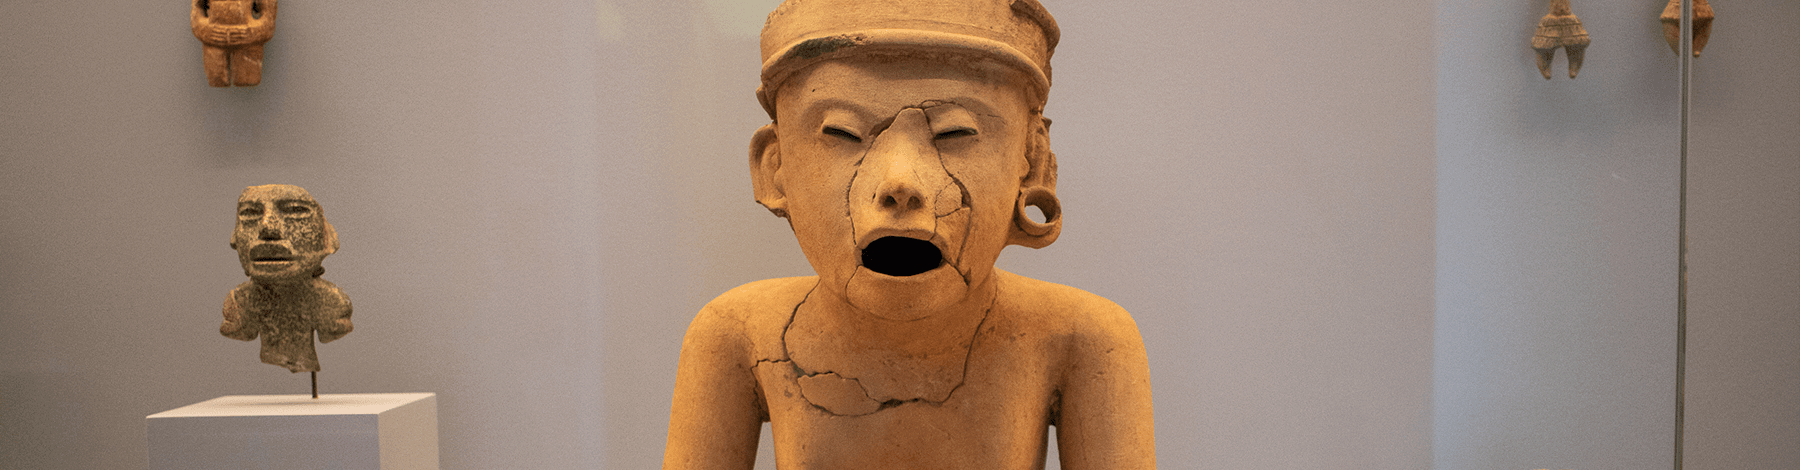 Escultura de hombre sentado que parece entonar un canto | Museo Amparo, Puebla | Museo Amparo, Puebla.